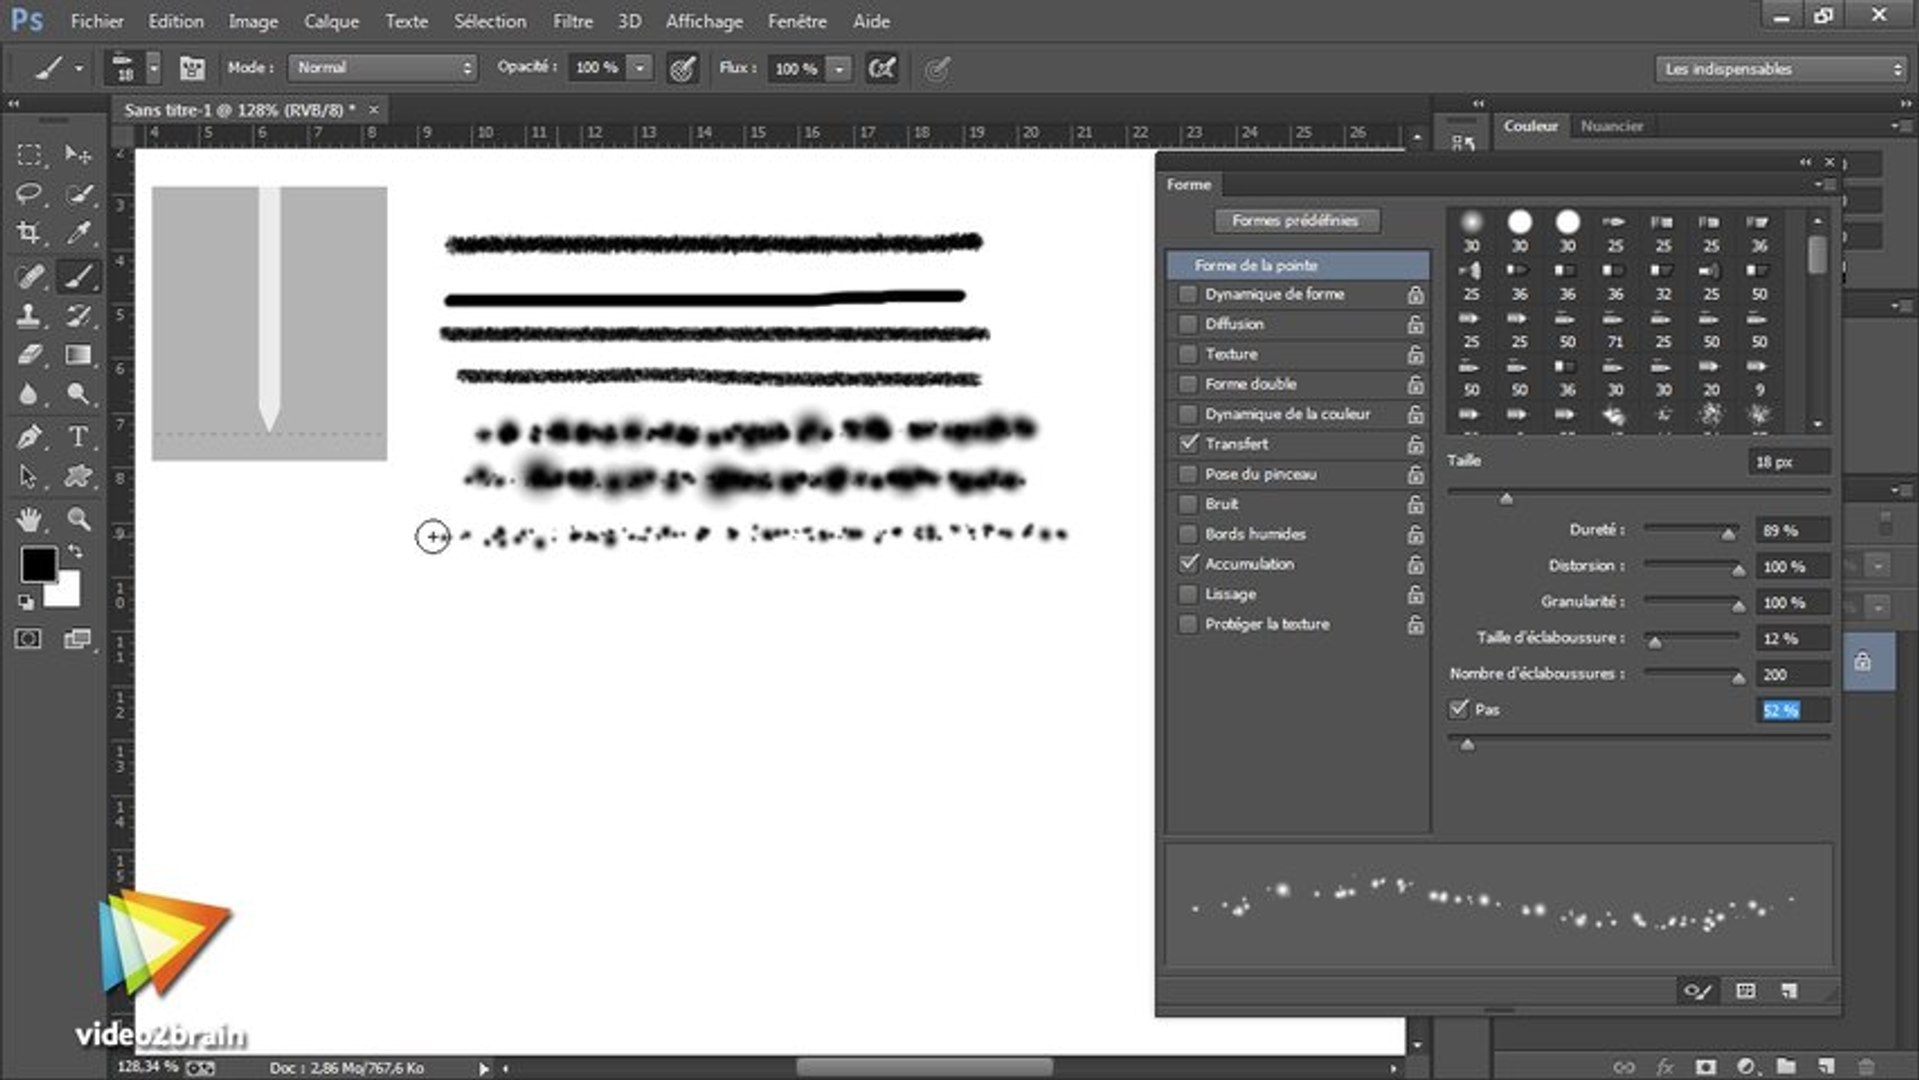 Tutoriel Adobe Photoshop CC : Les formes aérographe | video2brain.com -  Vidéo Dailymotion